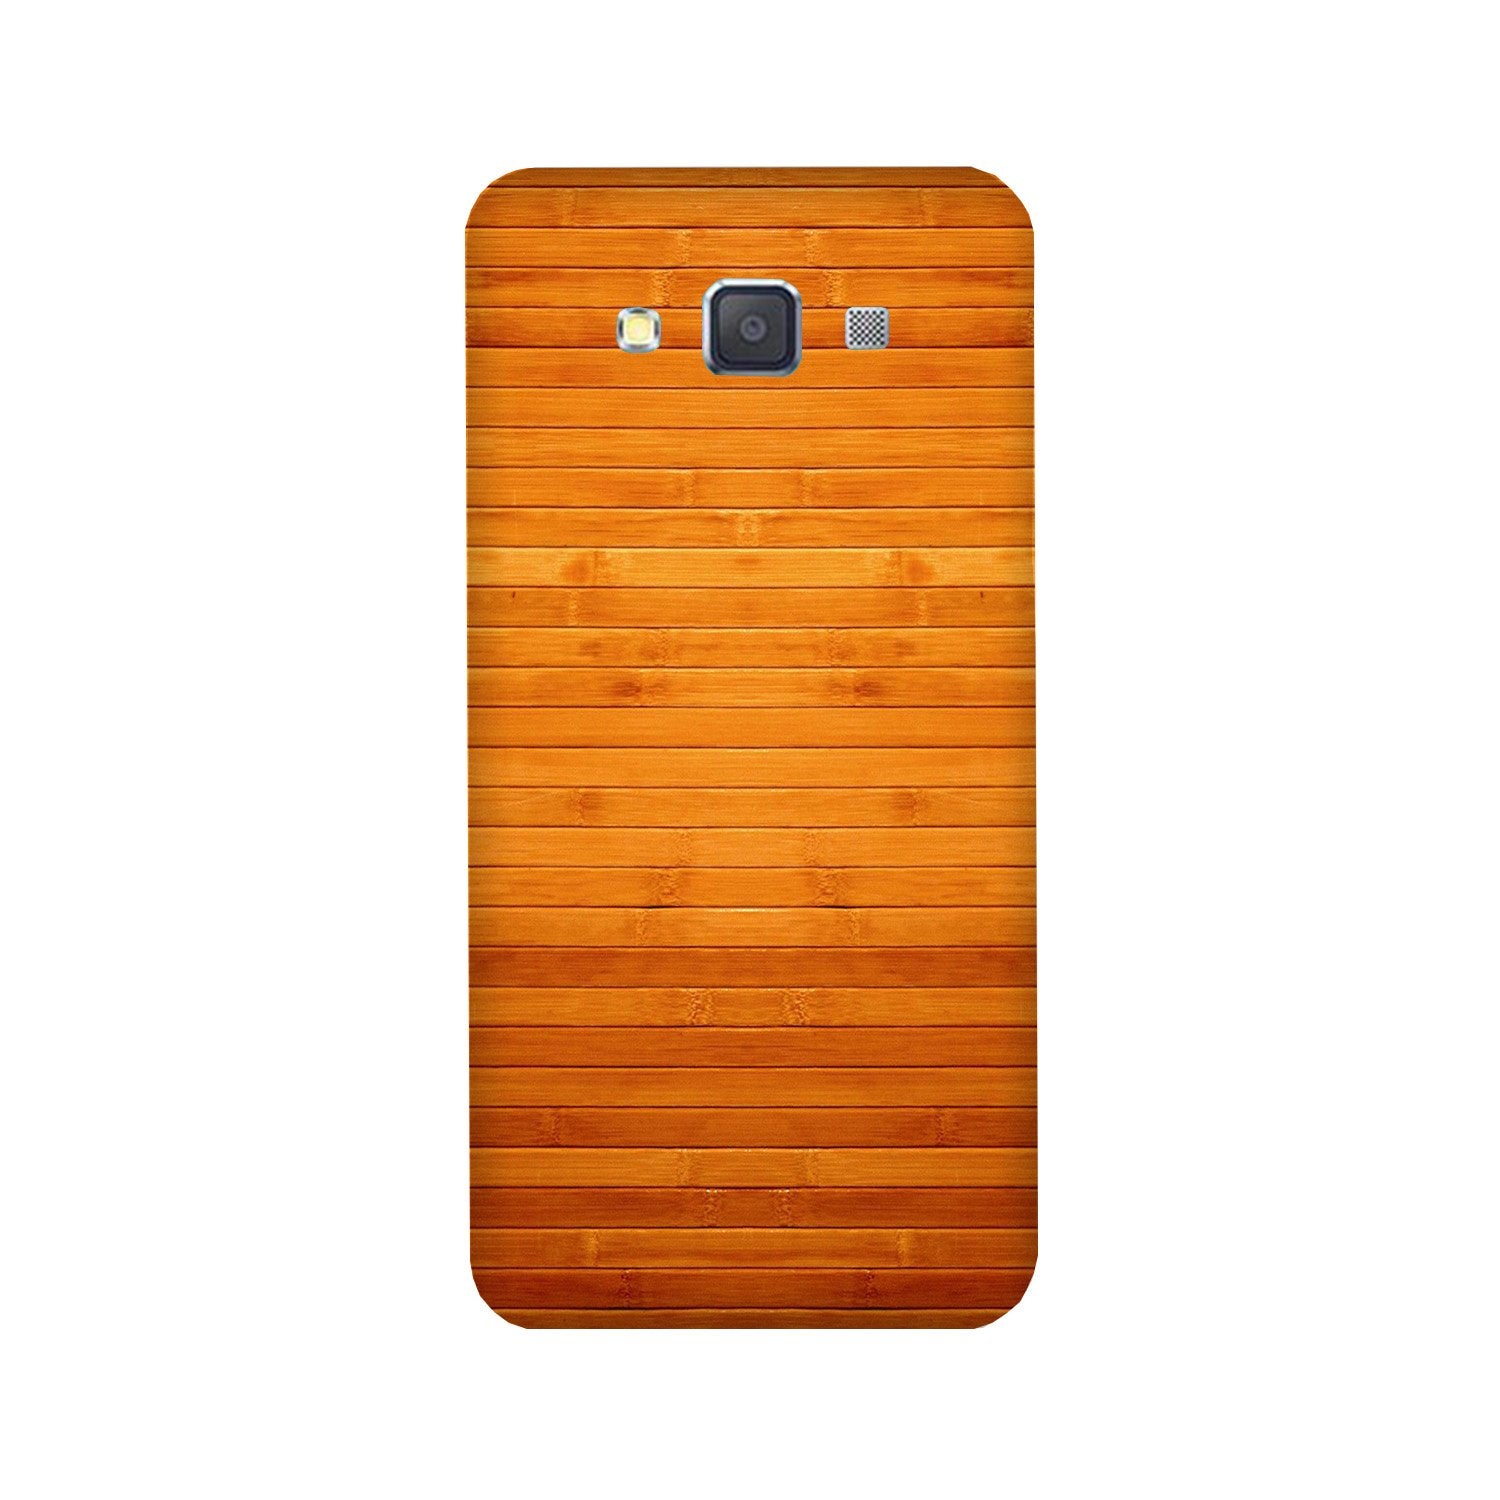 Wooden Look Case for Galaxy E5  (Design - 111)